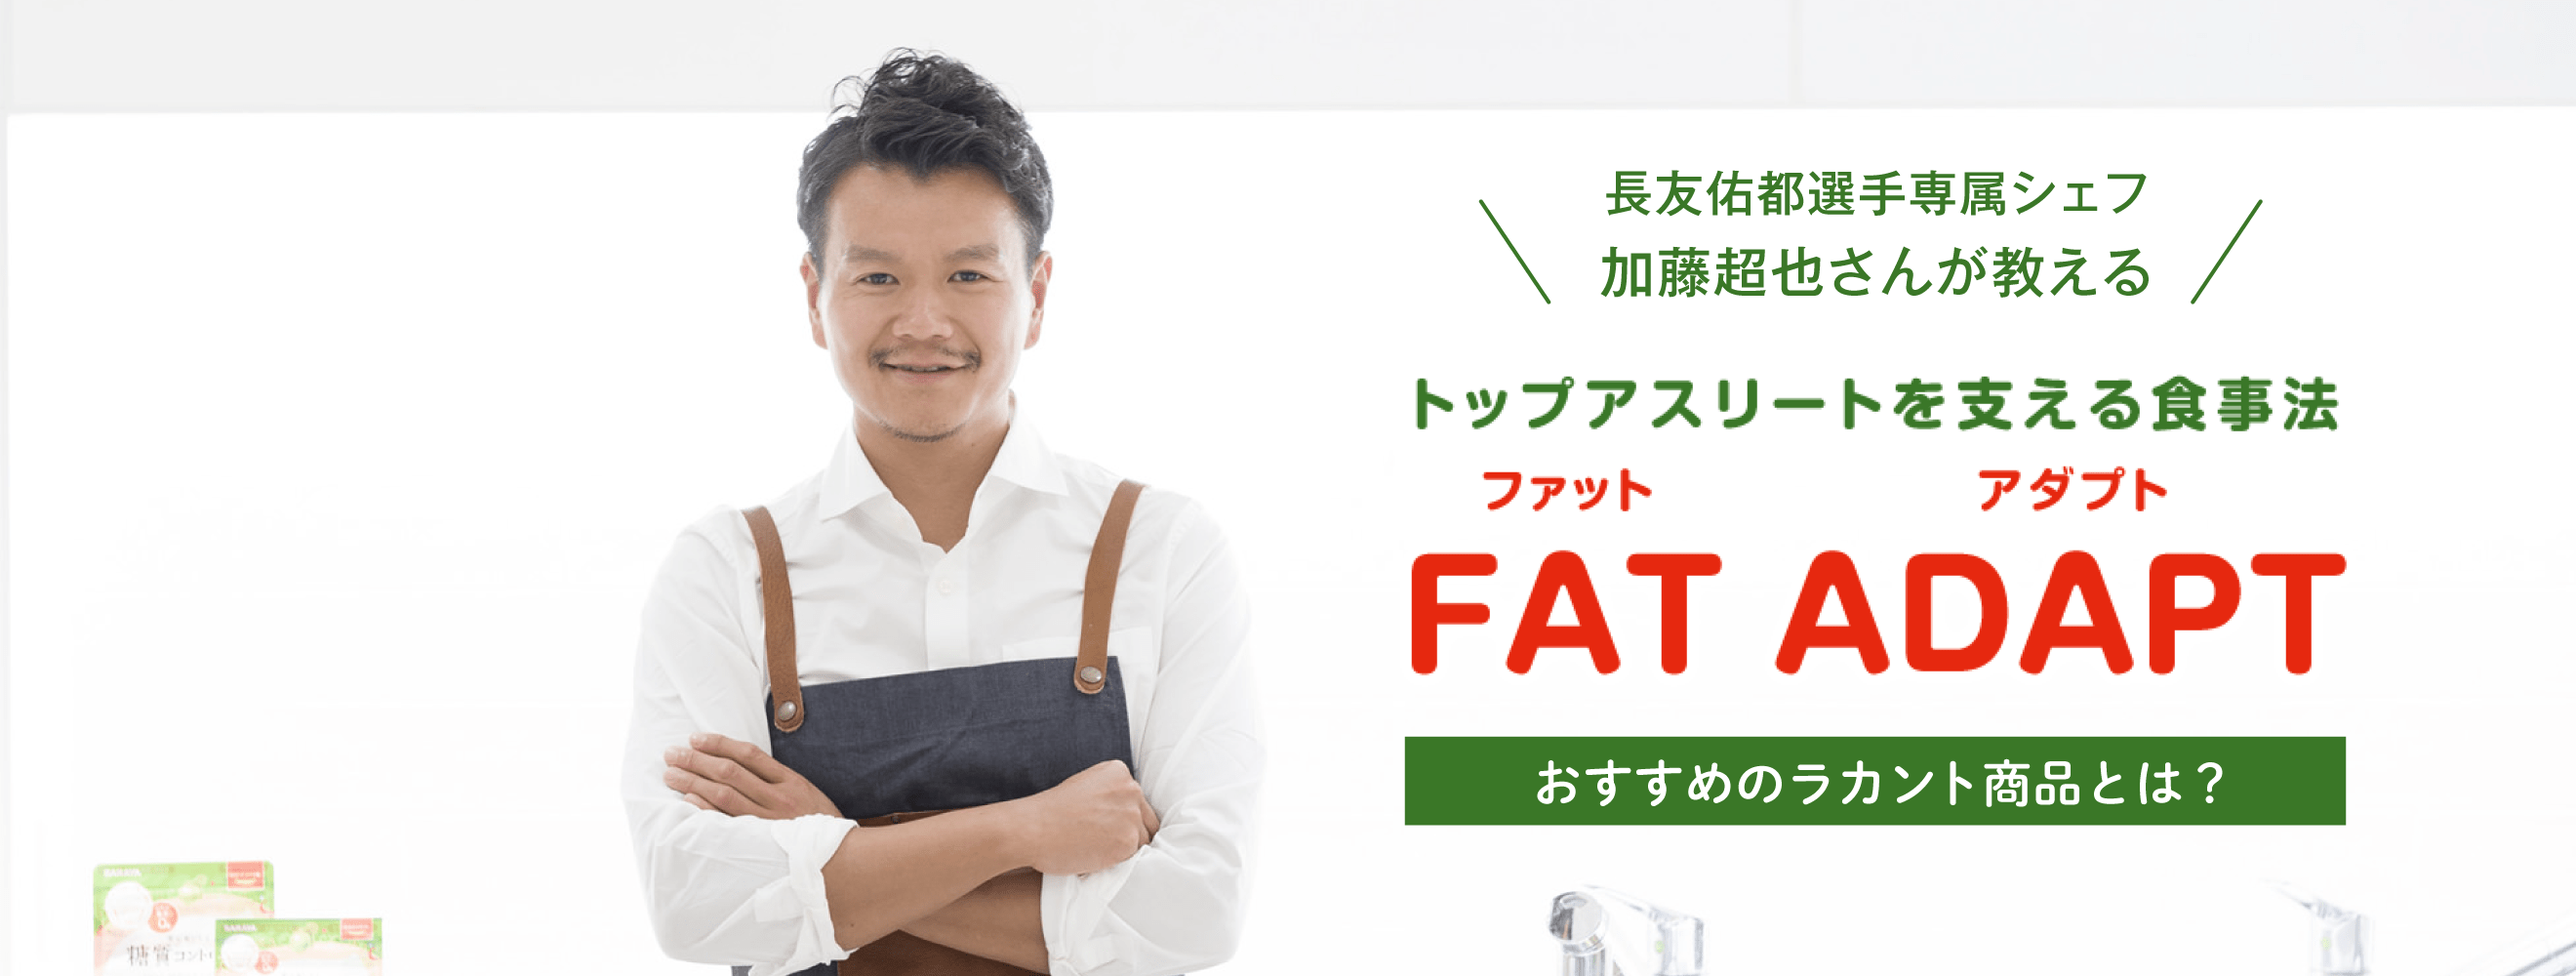 トップアスリートを支える食事法「FAT ADAPT」